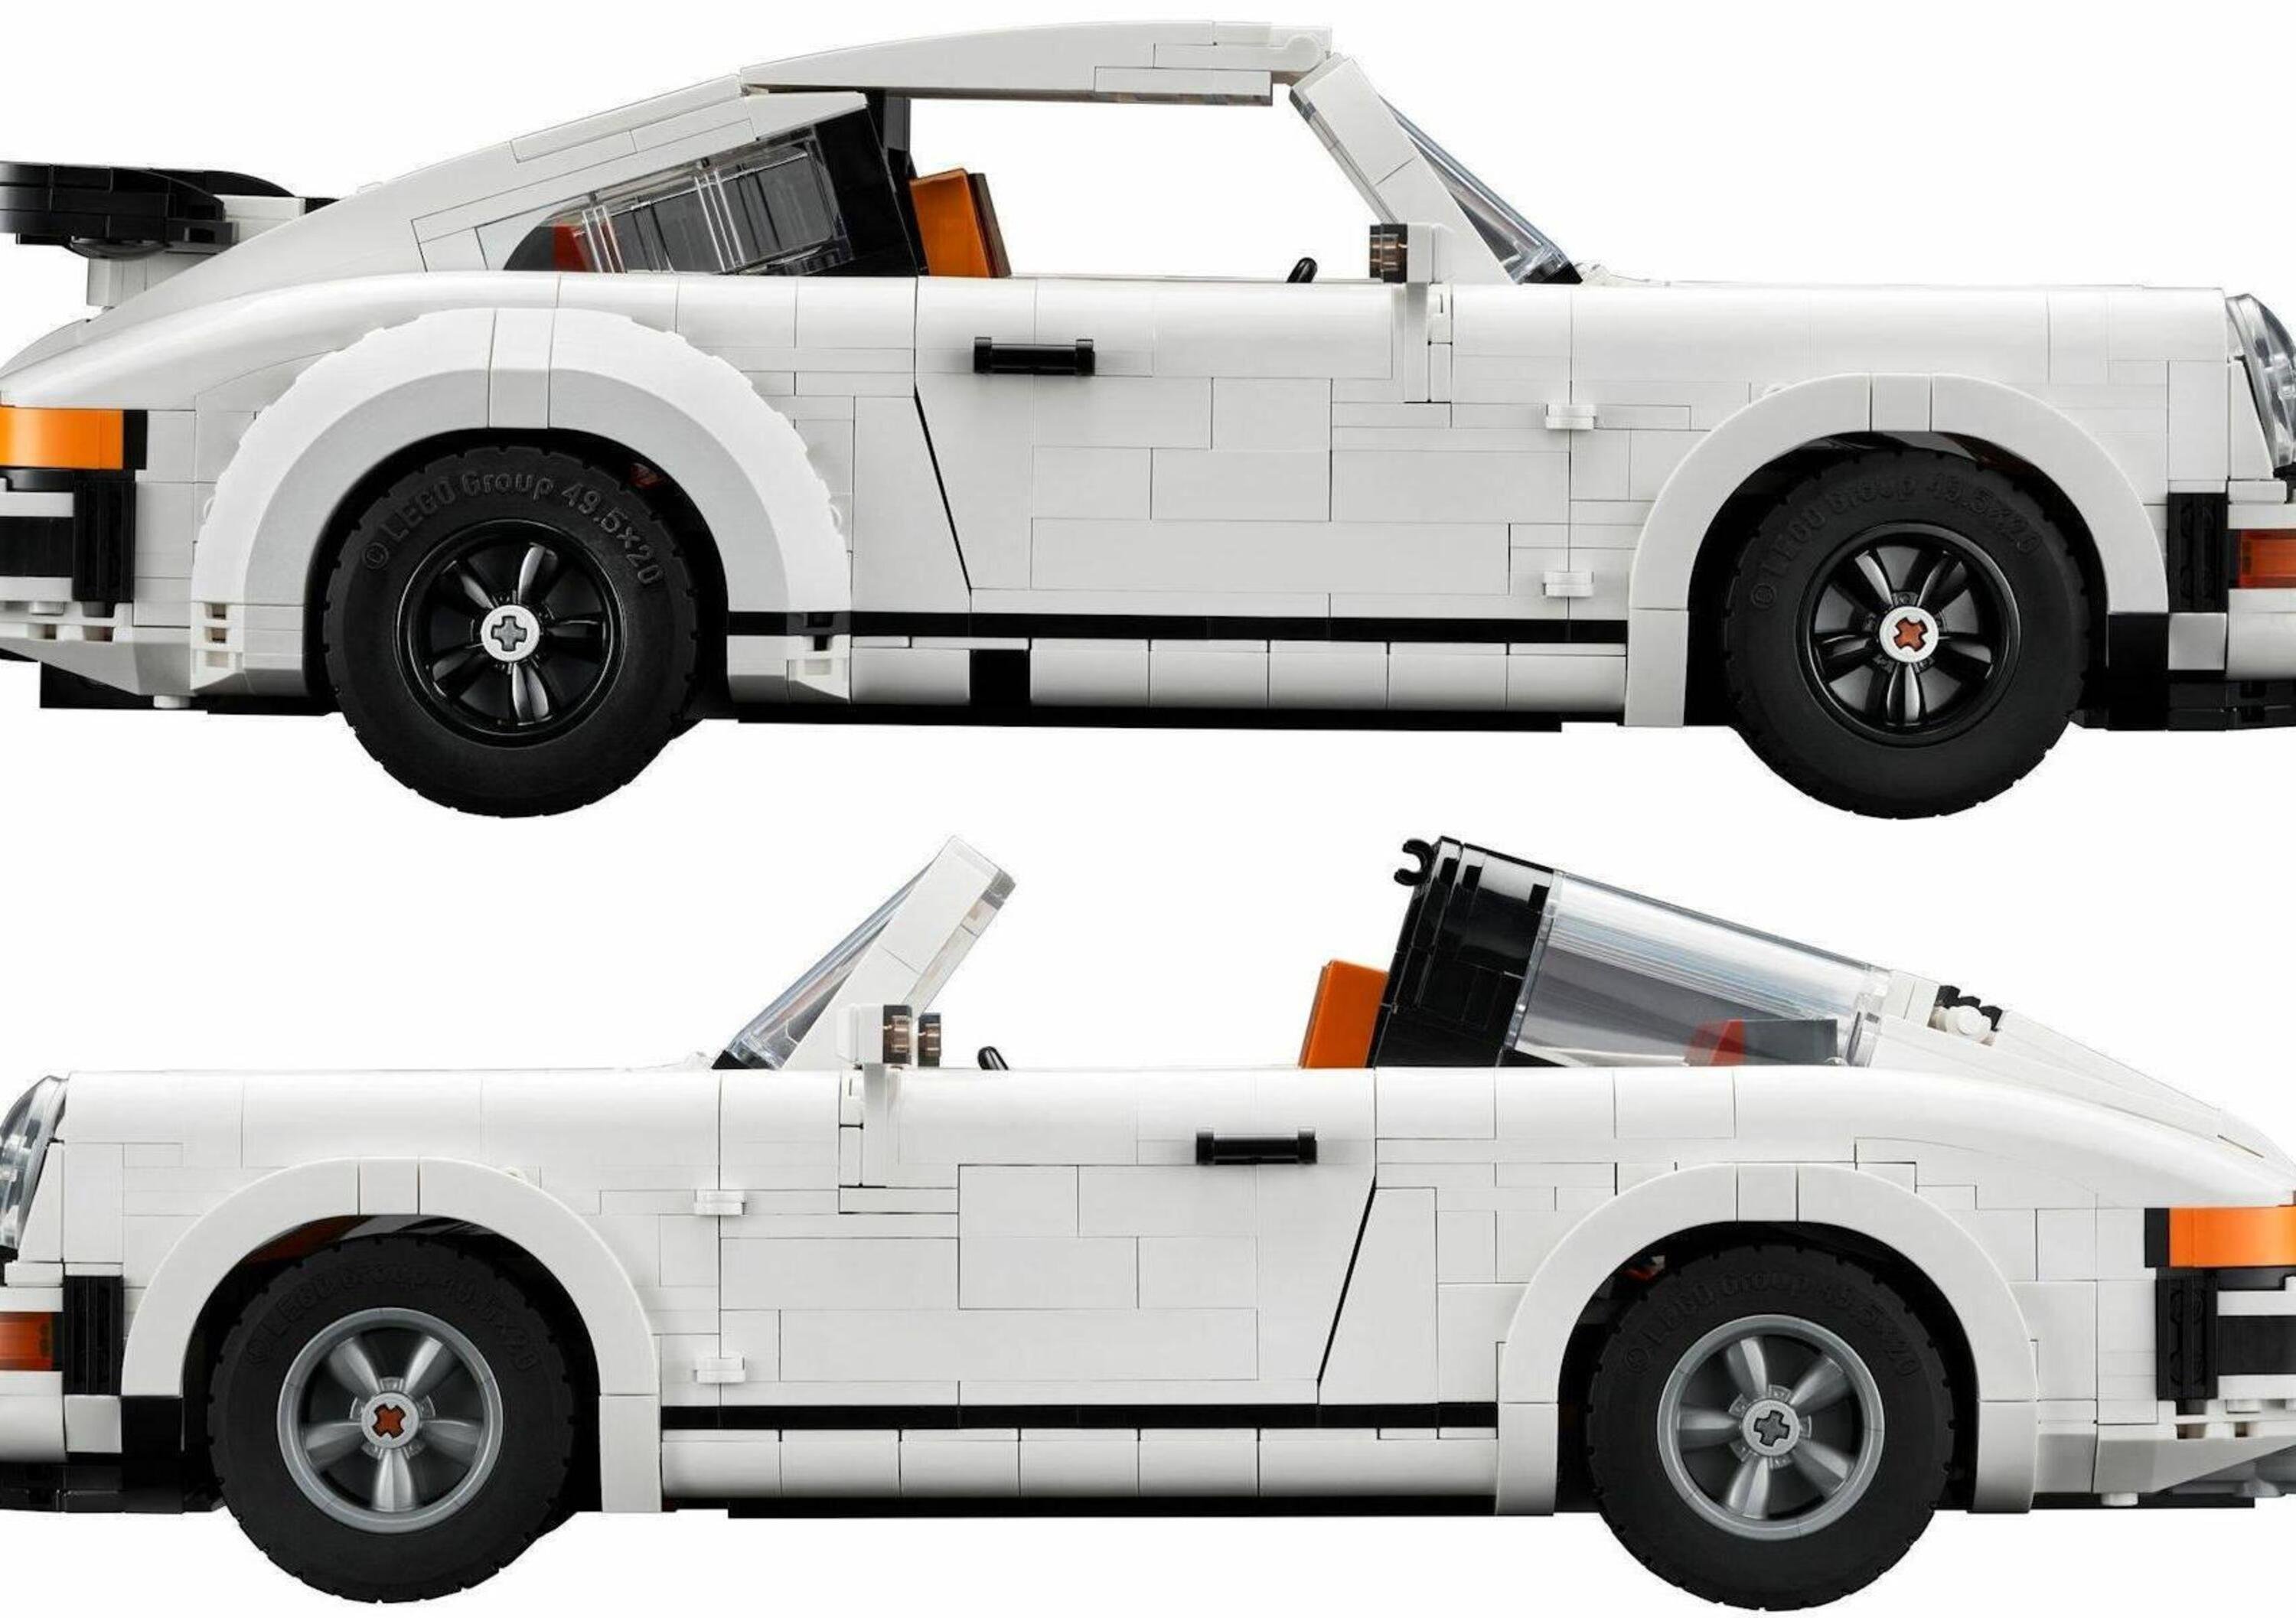 Lego Porsche 911 Turbo e 911 Targa, ecco le icone anni Settanta e Ottanta a mattoncini